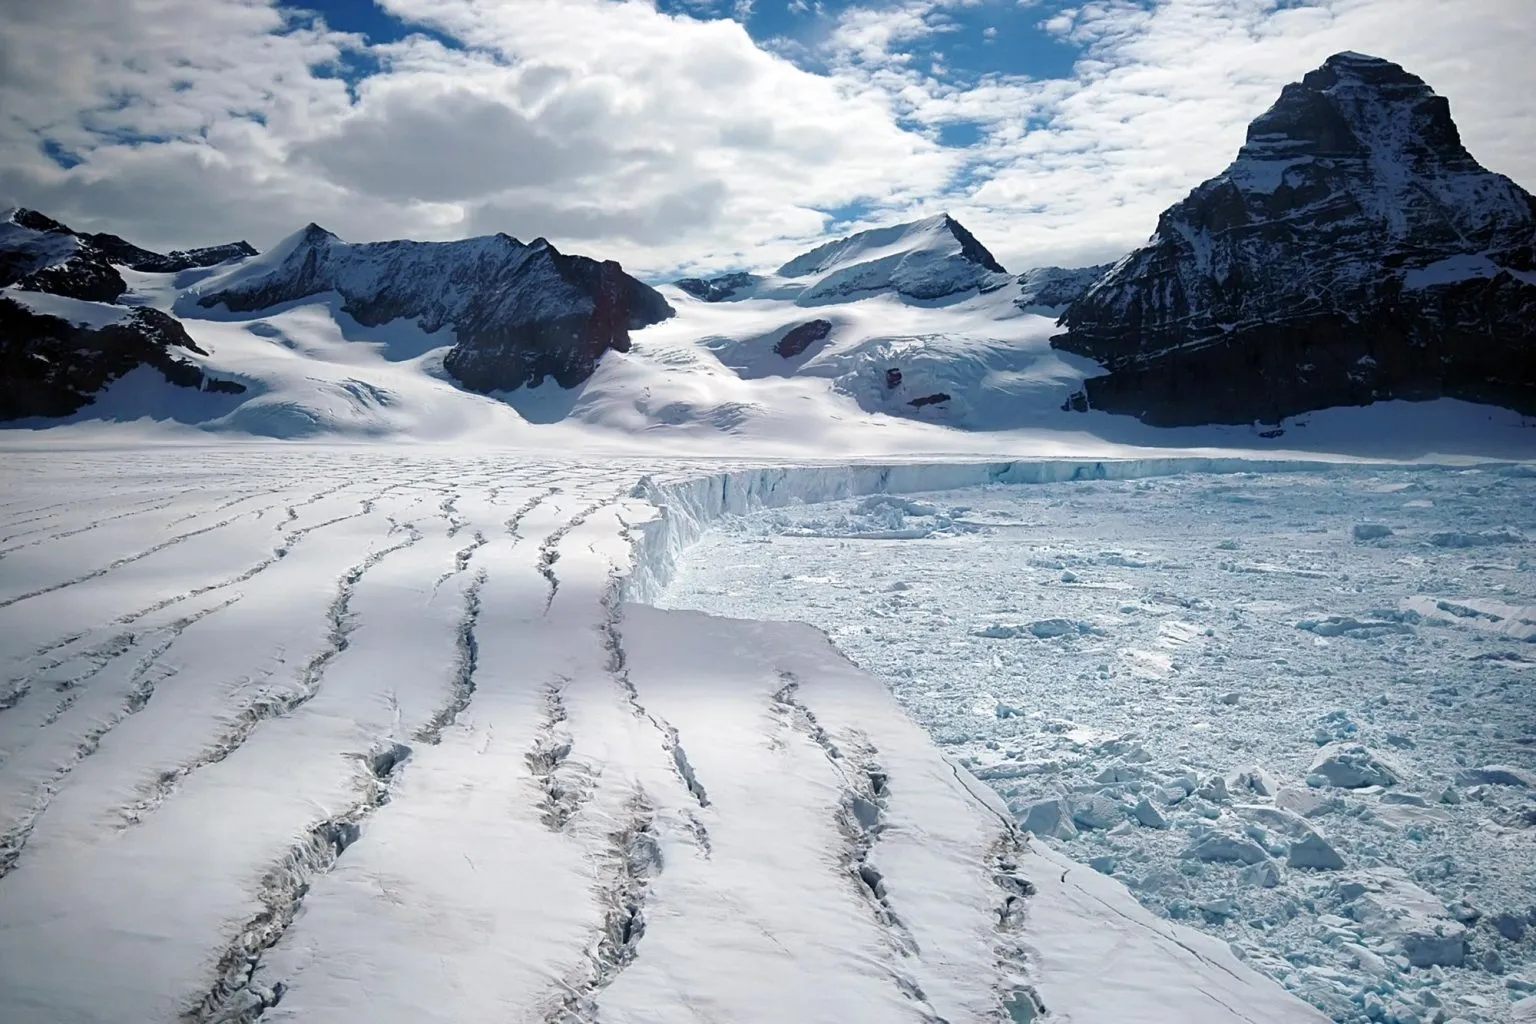 卡内基梅隆大学的研究人员预计到2100年3个冰川中的2个可能会消失